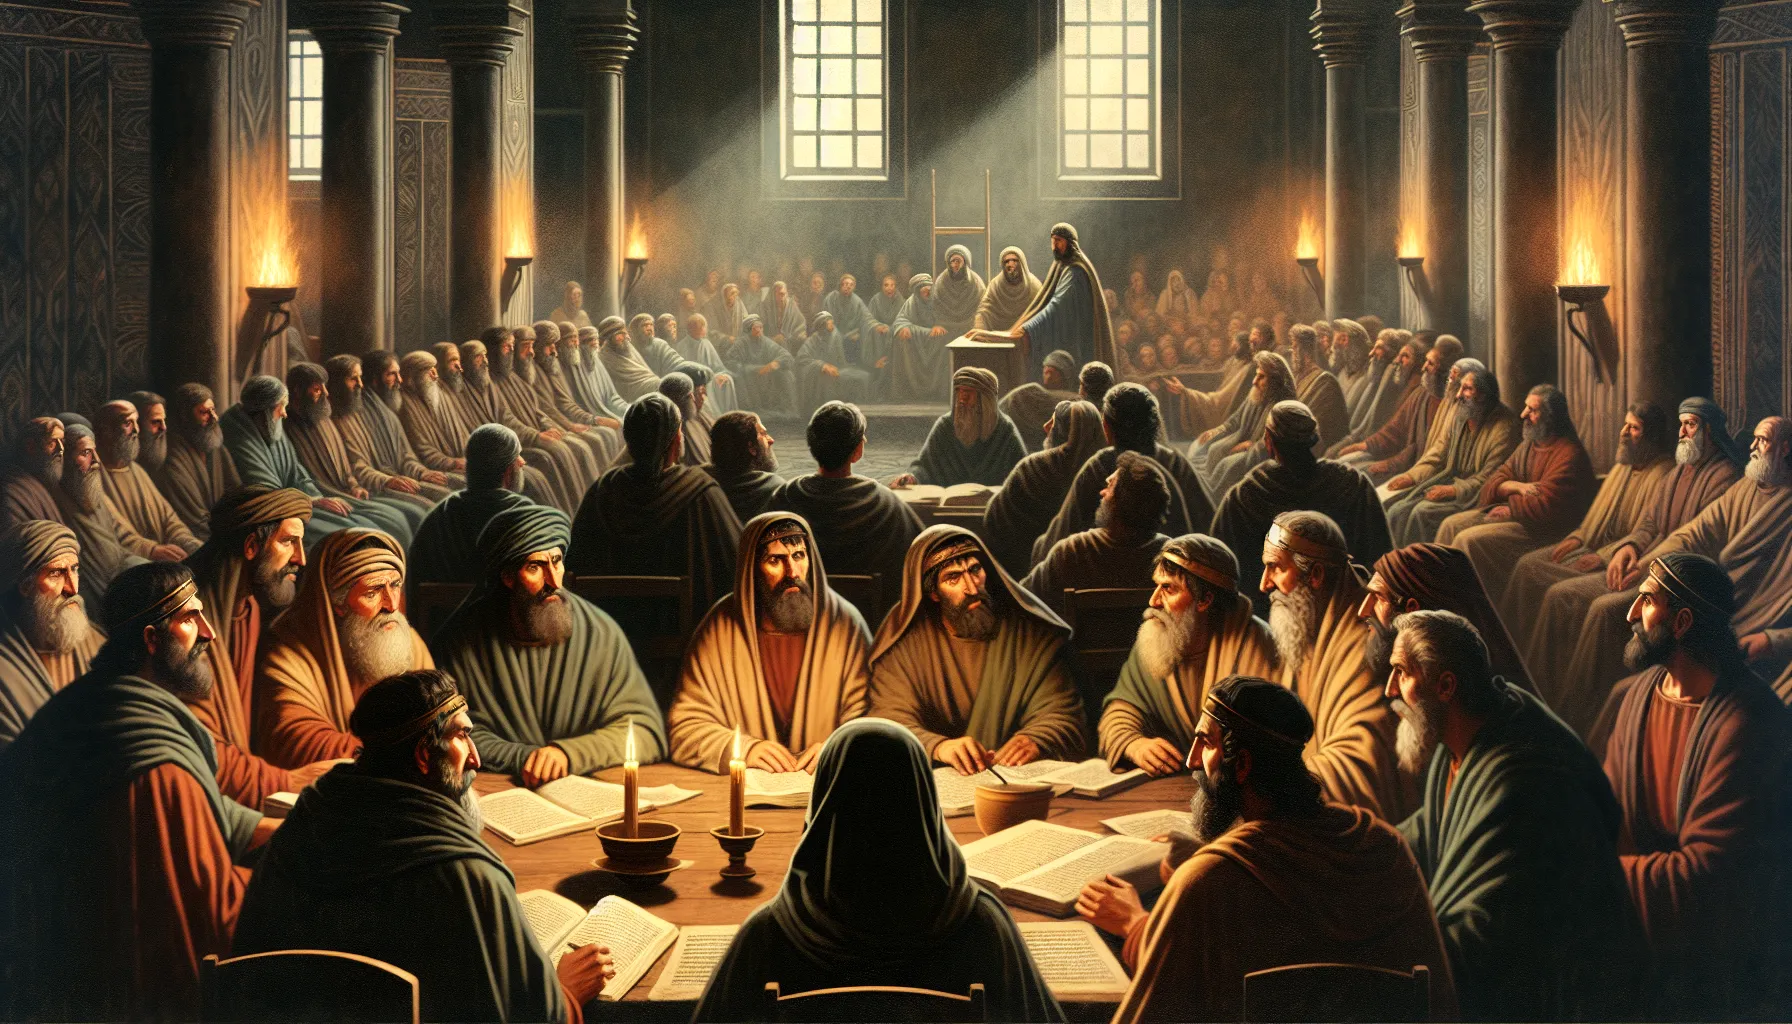 Imagen ilustrativa representando la reunión del Concilio de Nicea en el año 325 d.C.